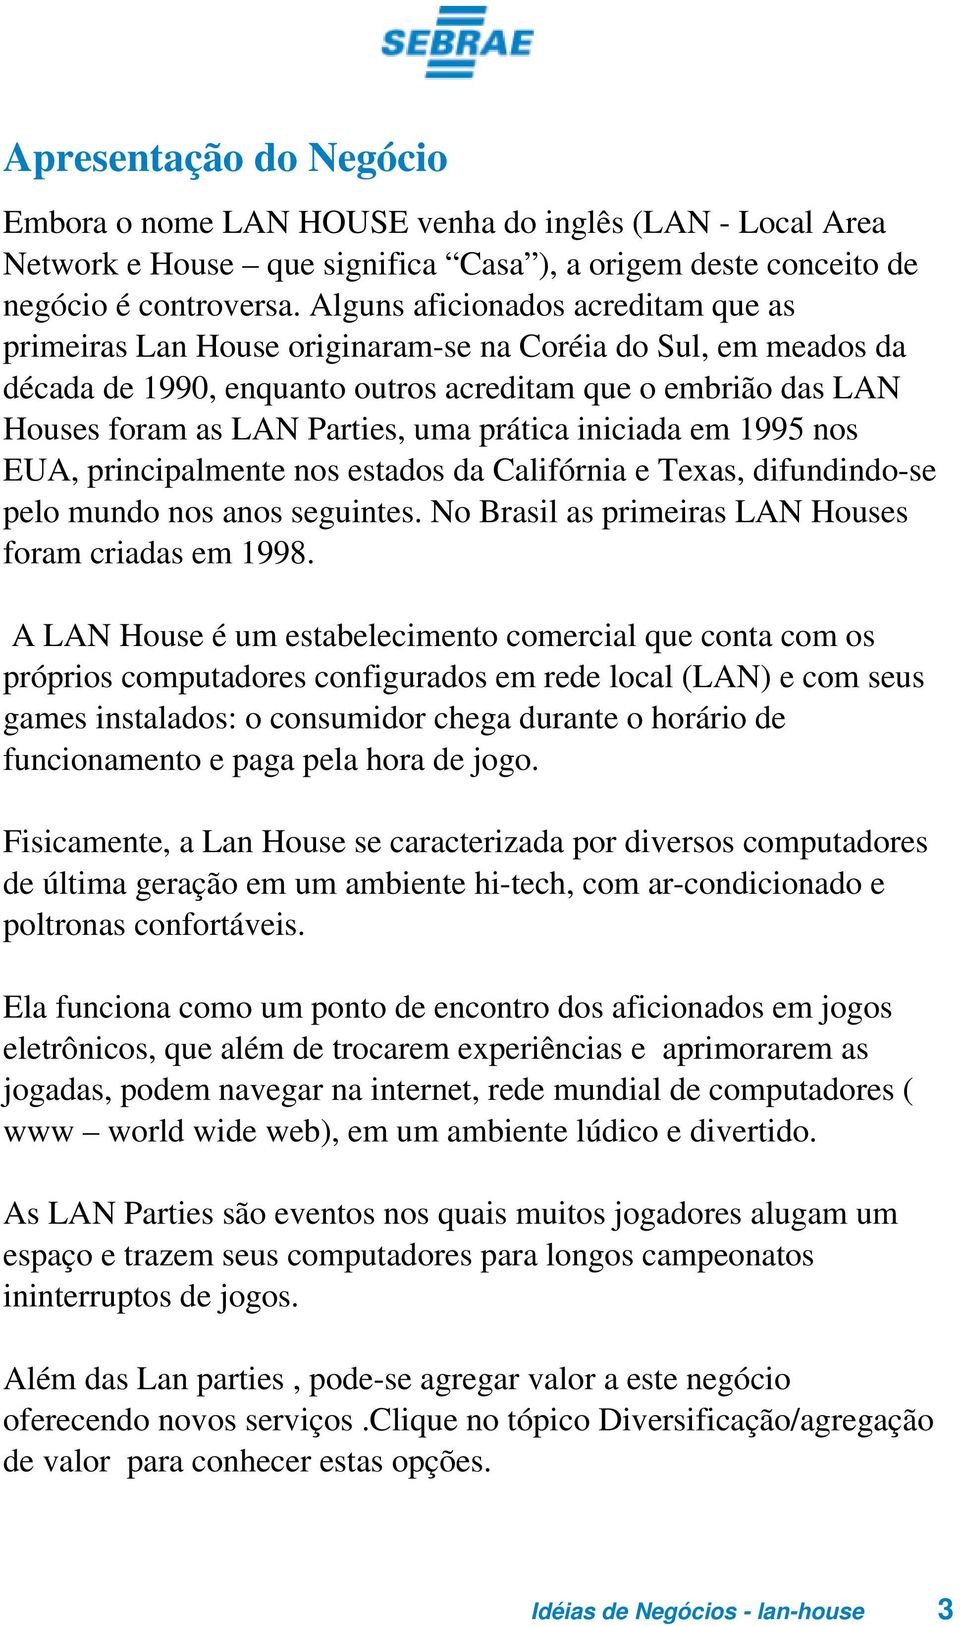 prática iniciada em 1995 nos EUA, principalmente nos estados da Califórnia e Texas, difundindo-se pelo mundo nos anos seguintes. No Brasil as primeiras LAN Houses foram criadas em 1998.